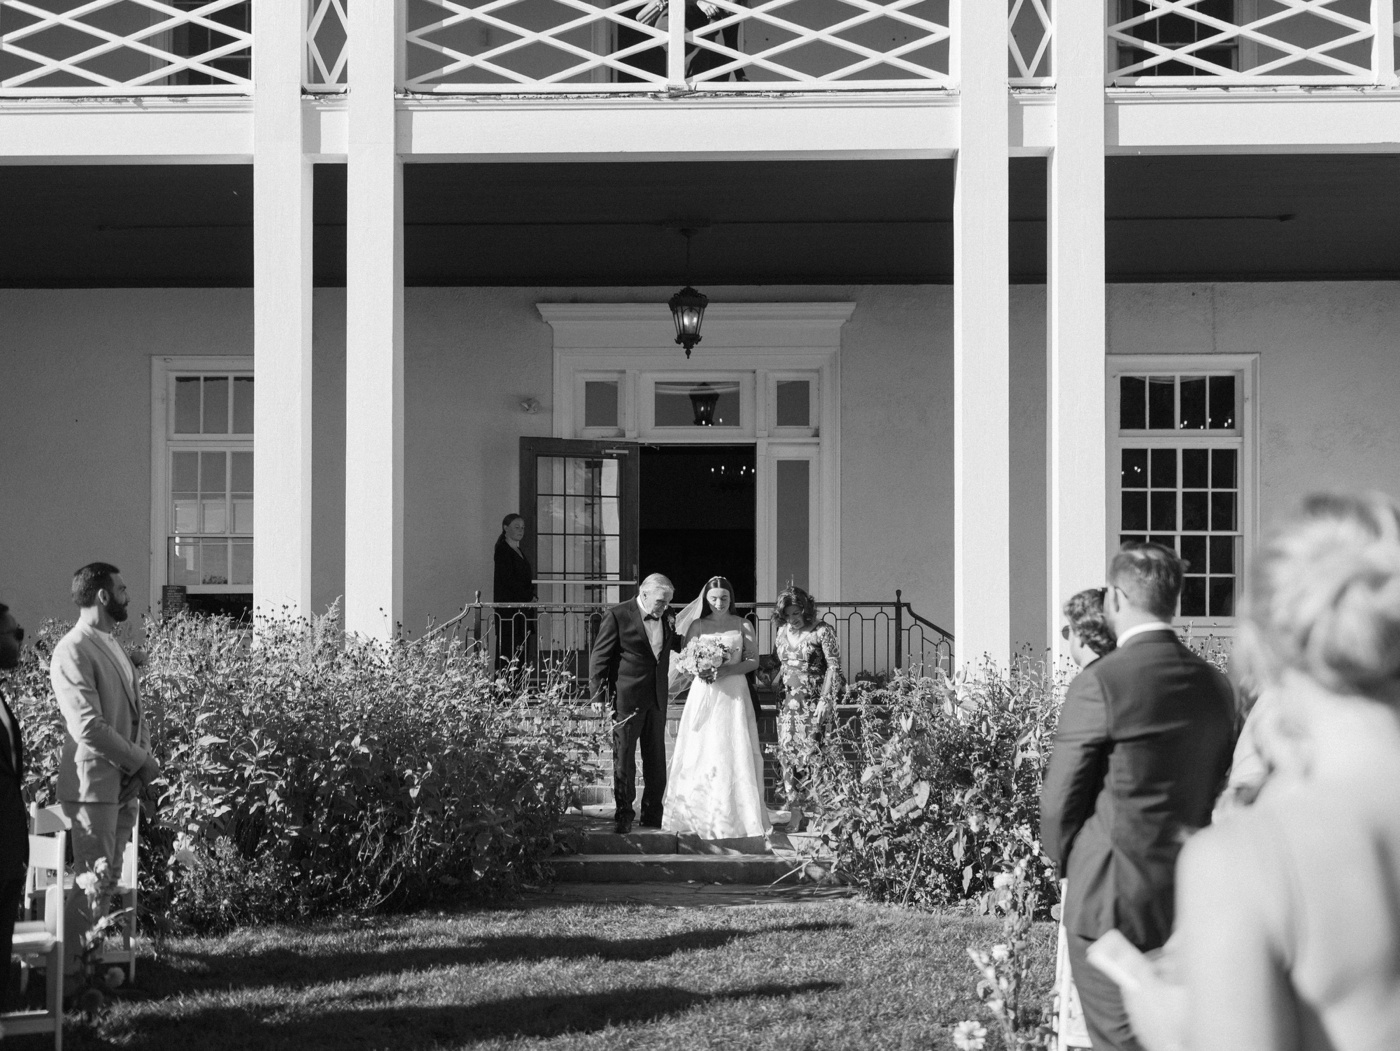 Outdoor wedding ceremony at Aldworth Manor